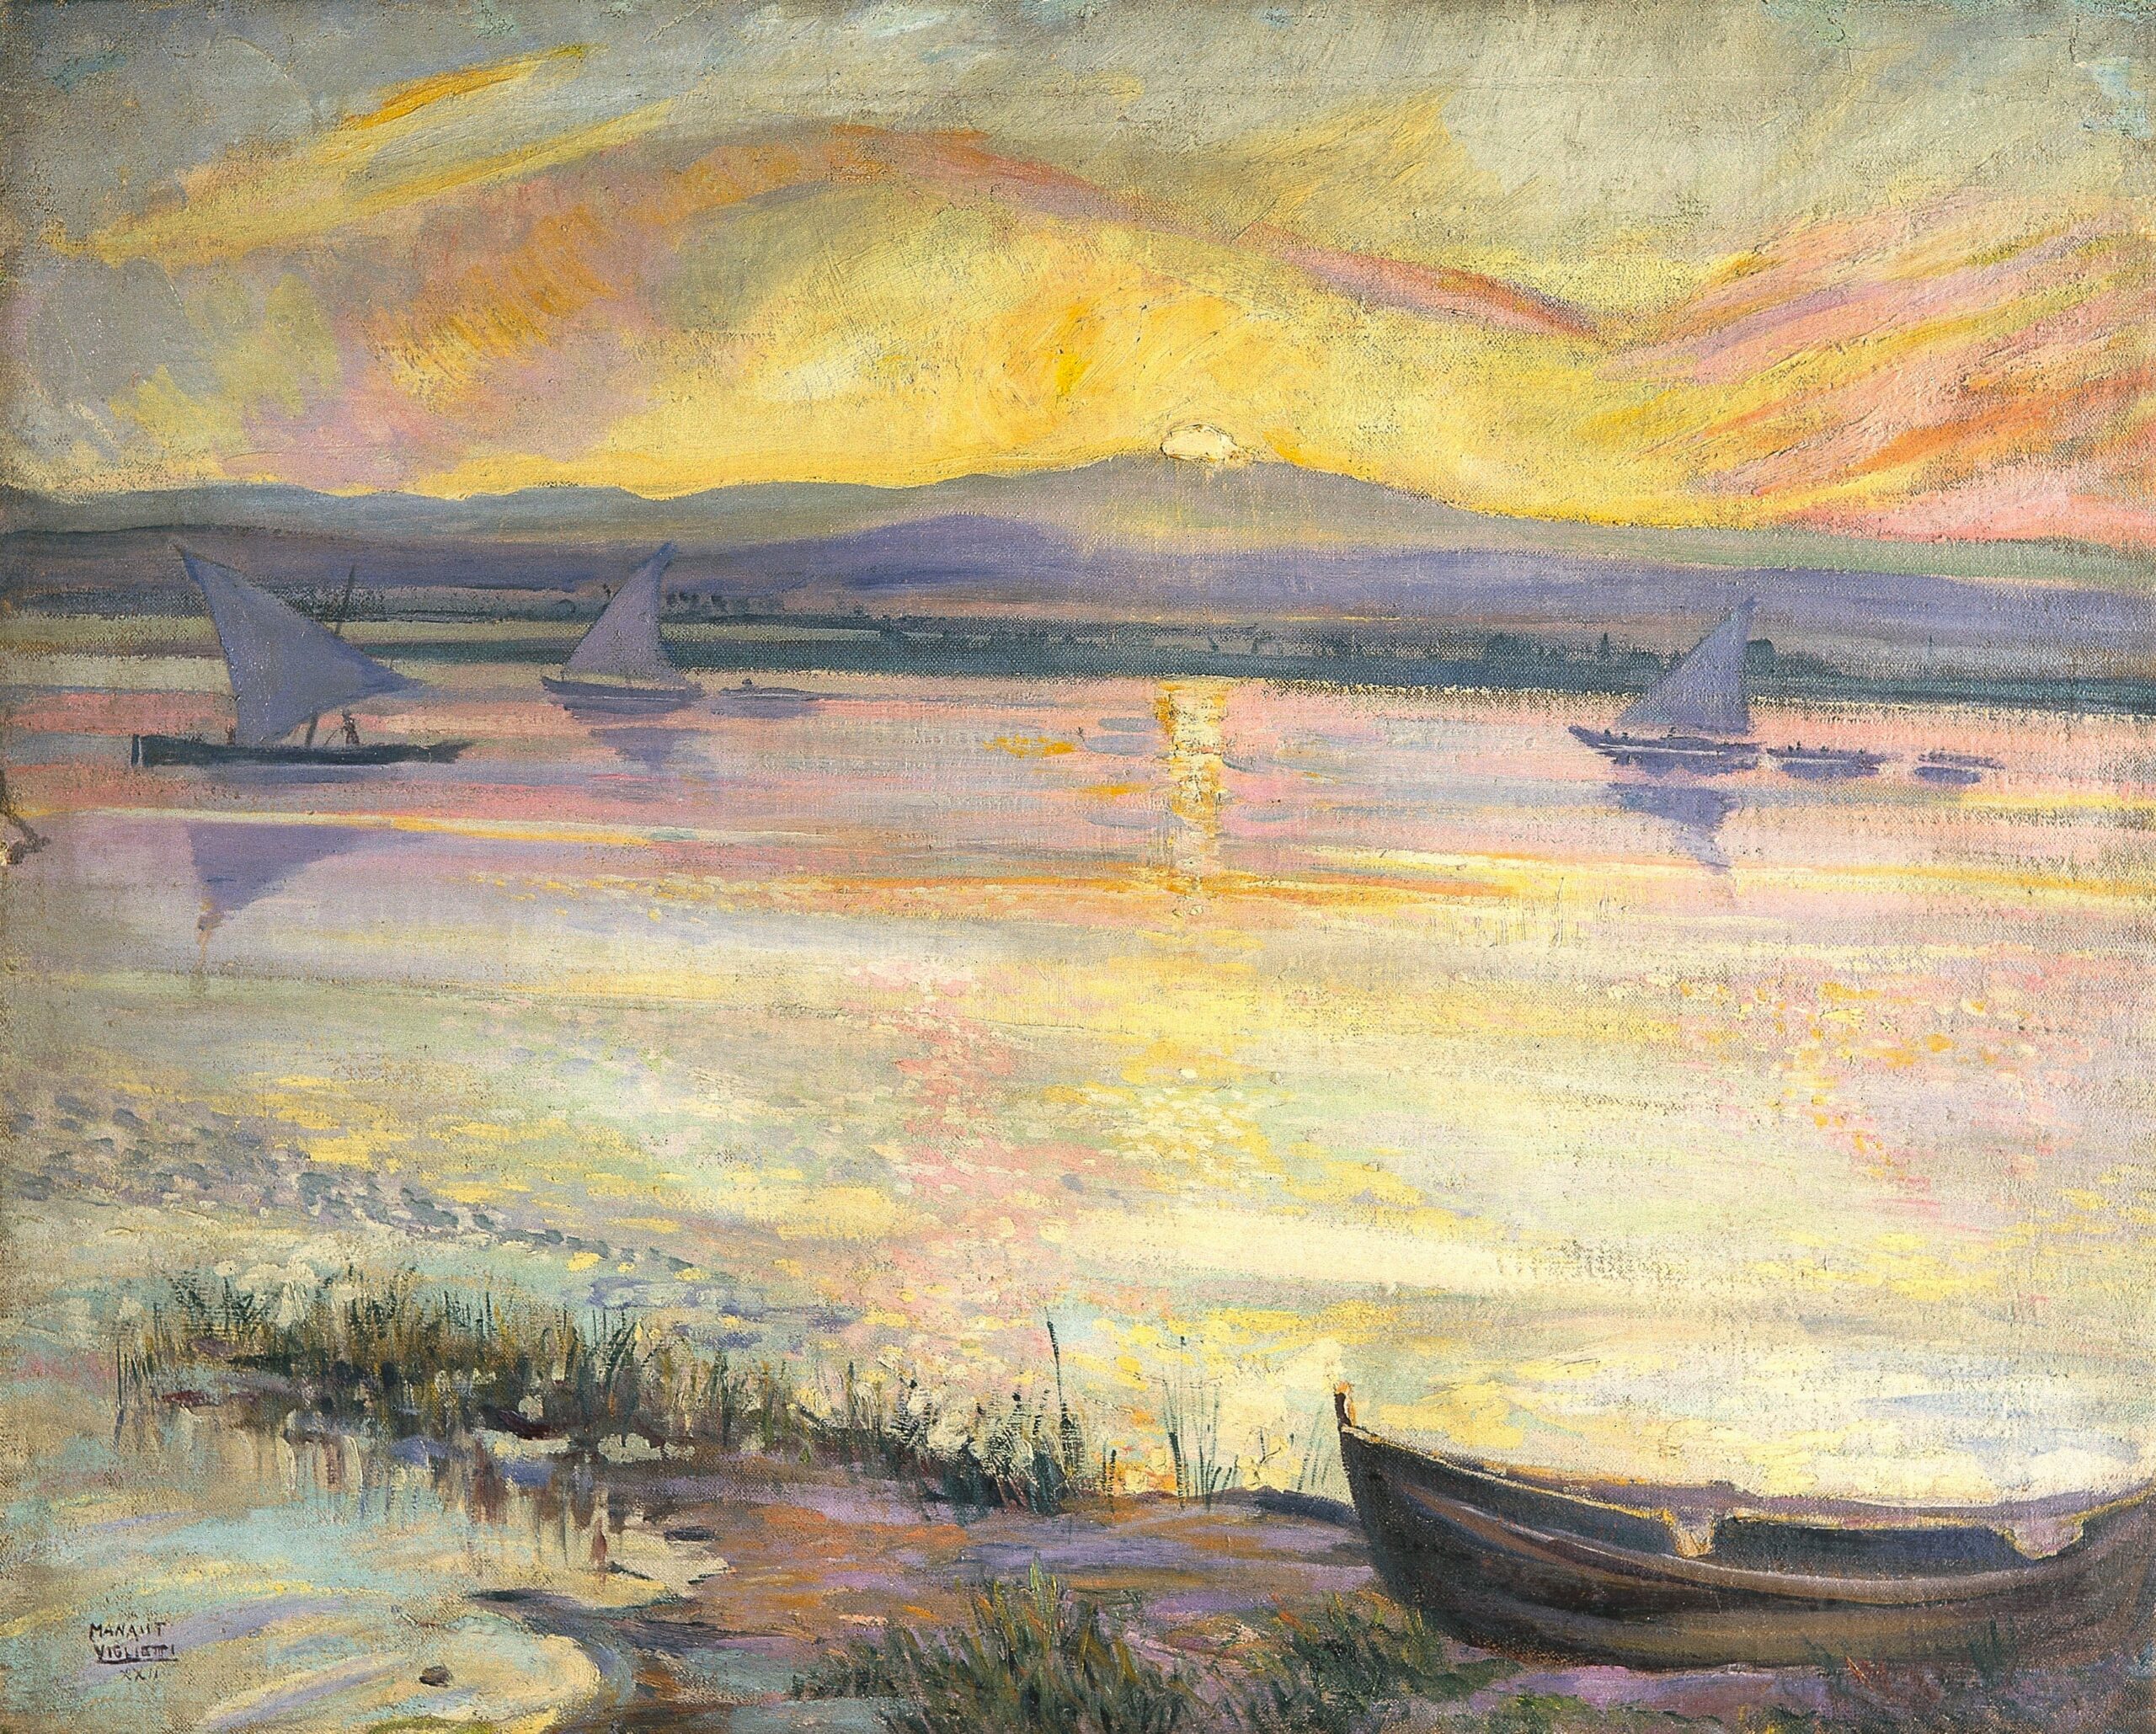 Pintura de José Manaut titulada Puesta de sol, La Albufera (Valencia), 1922. Óleo sobre lienzo.